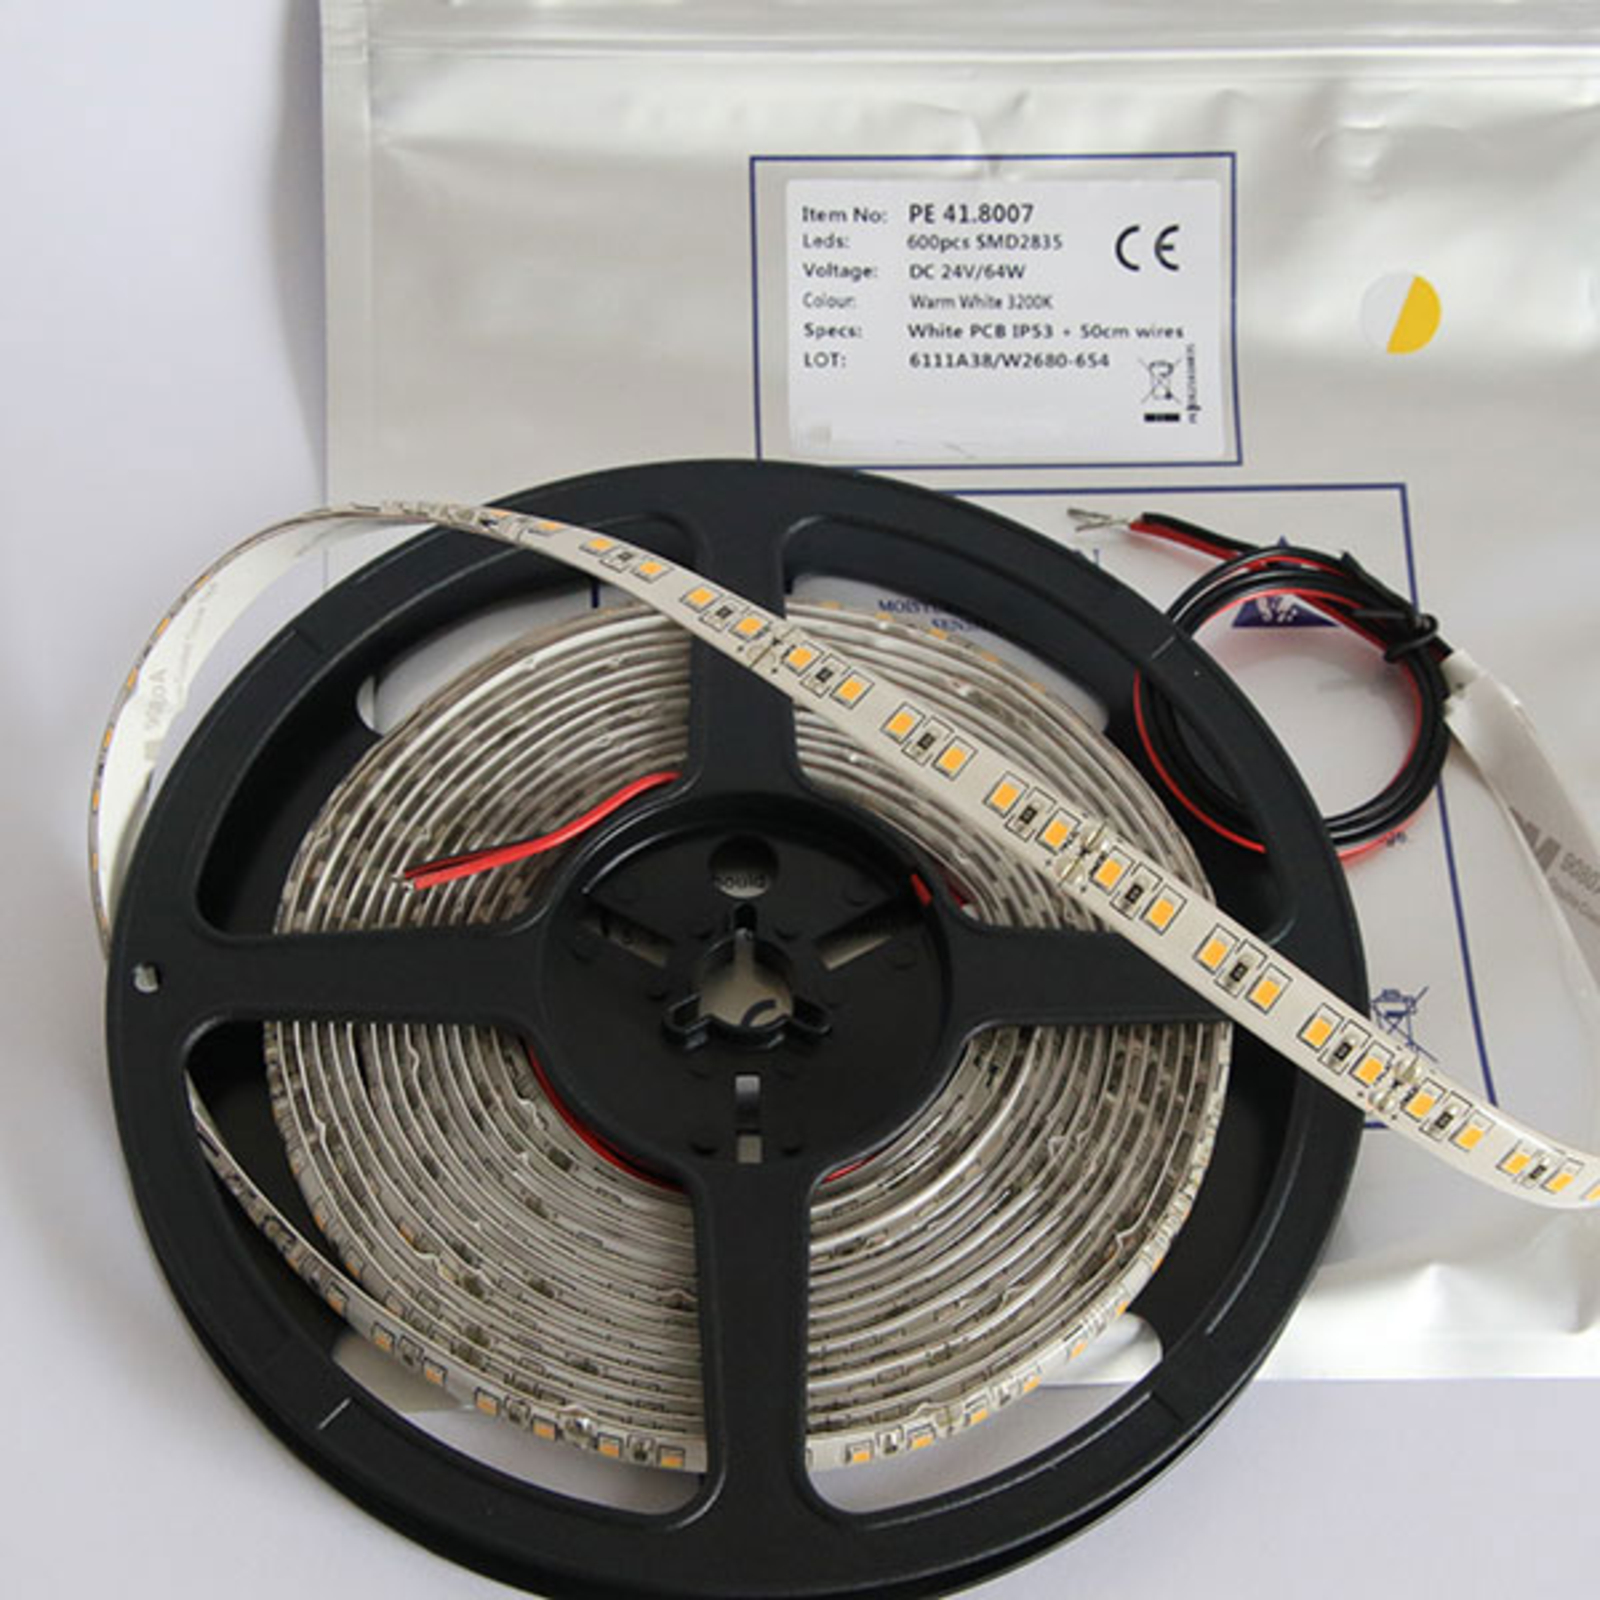 LED-nauha Mono 600 IP54 65W lämmin valkoinen 3200K